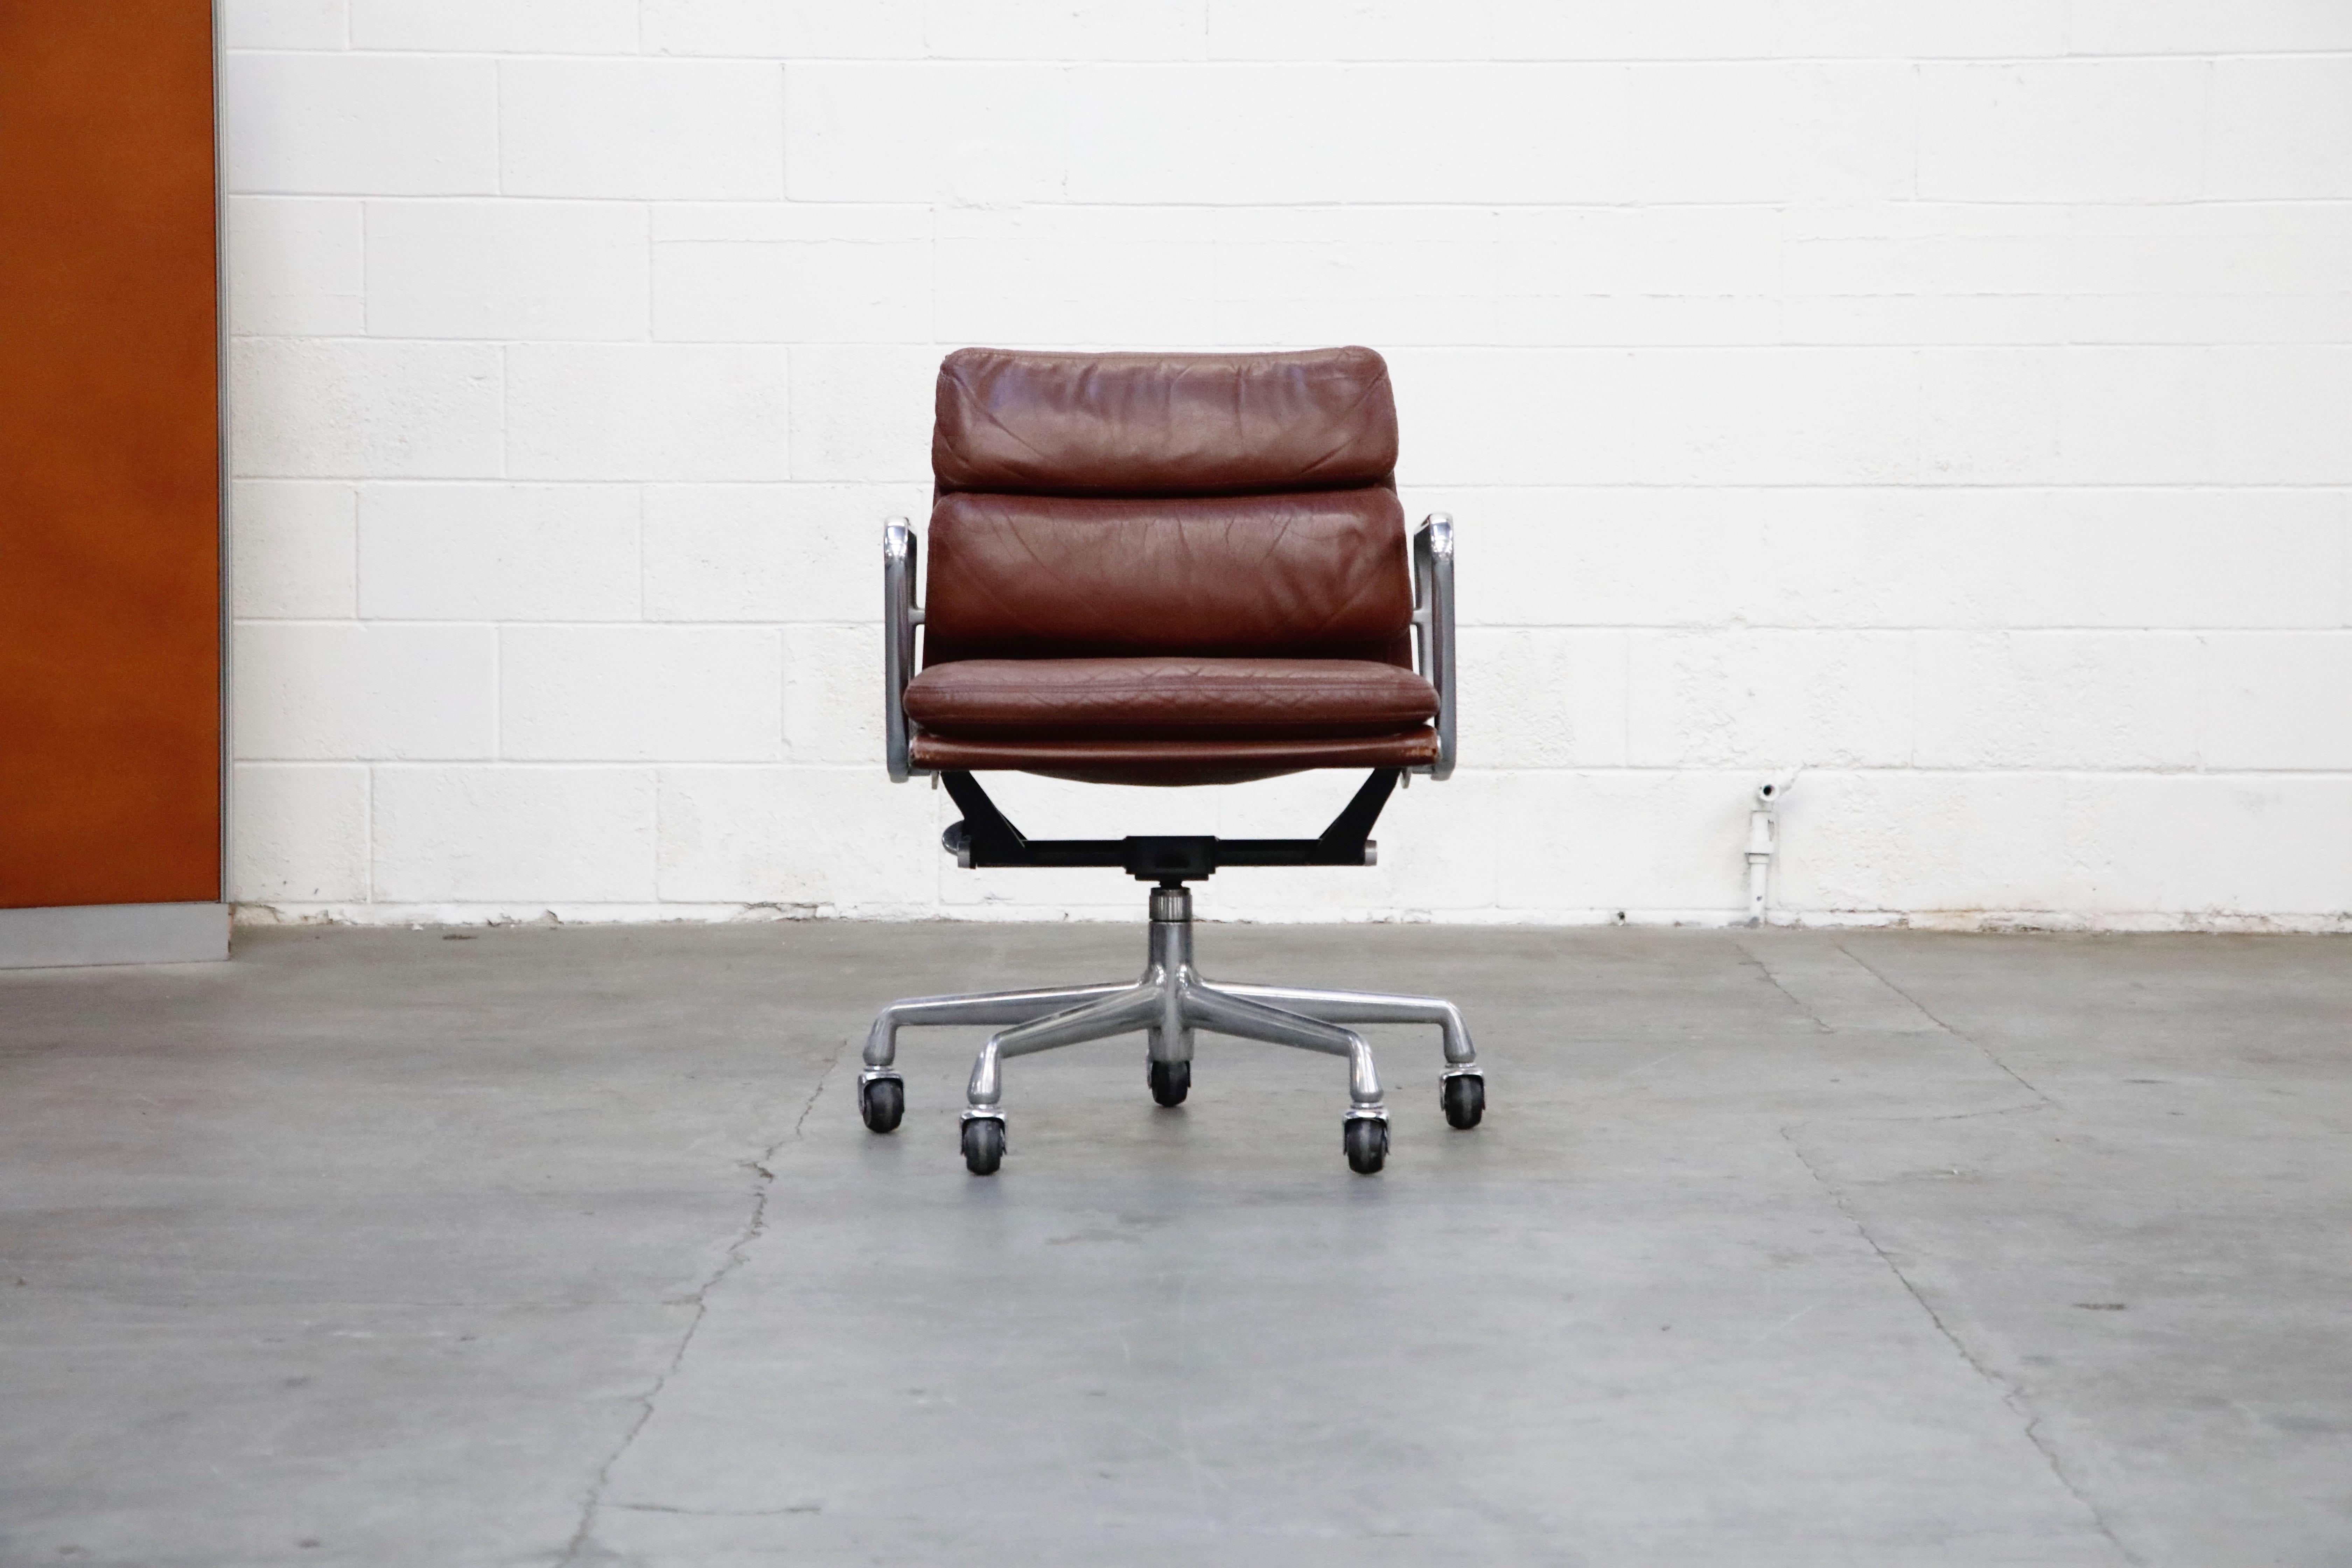 Chaise de bureau en cuir 'Soft Pad' de la ligne Aluminum Group:: conçue par Charles et Ray Eames pour Herman Miller:: à collectionner et à rechercher. Il présente son revêtement d'origine en cuir de couleur marron sur une base et un cadre en